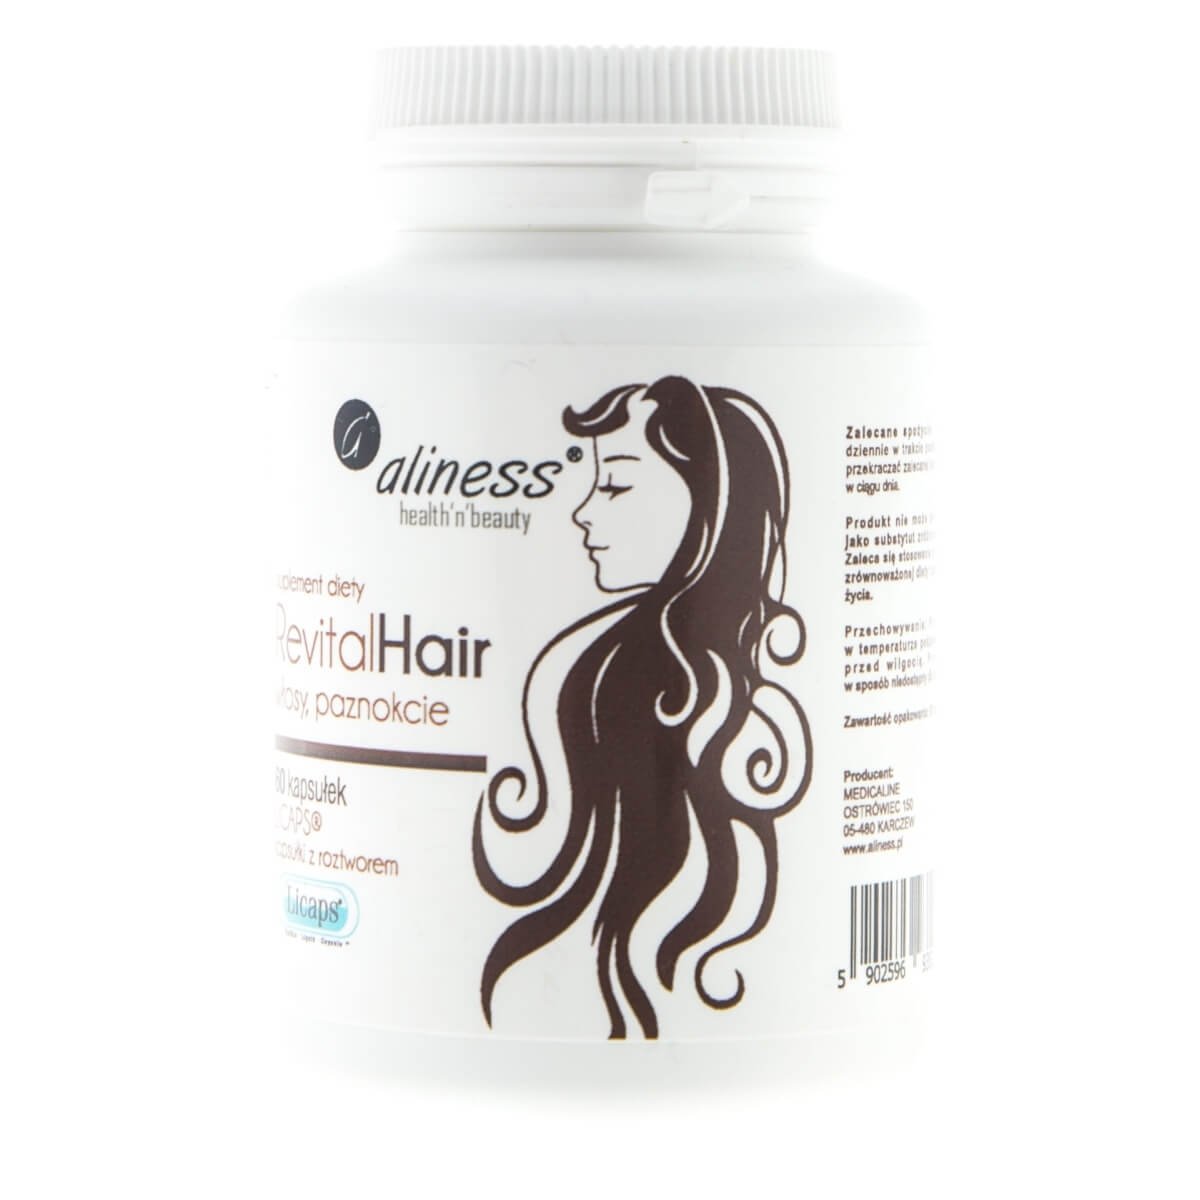 Zdjęcia - Witaminy i składniki mineralne Aliness RevitalHair włosy, paznokcie MEDICALINE, Suplement diety, 60 kaps. 